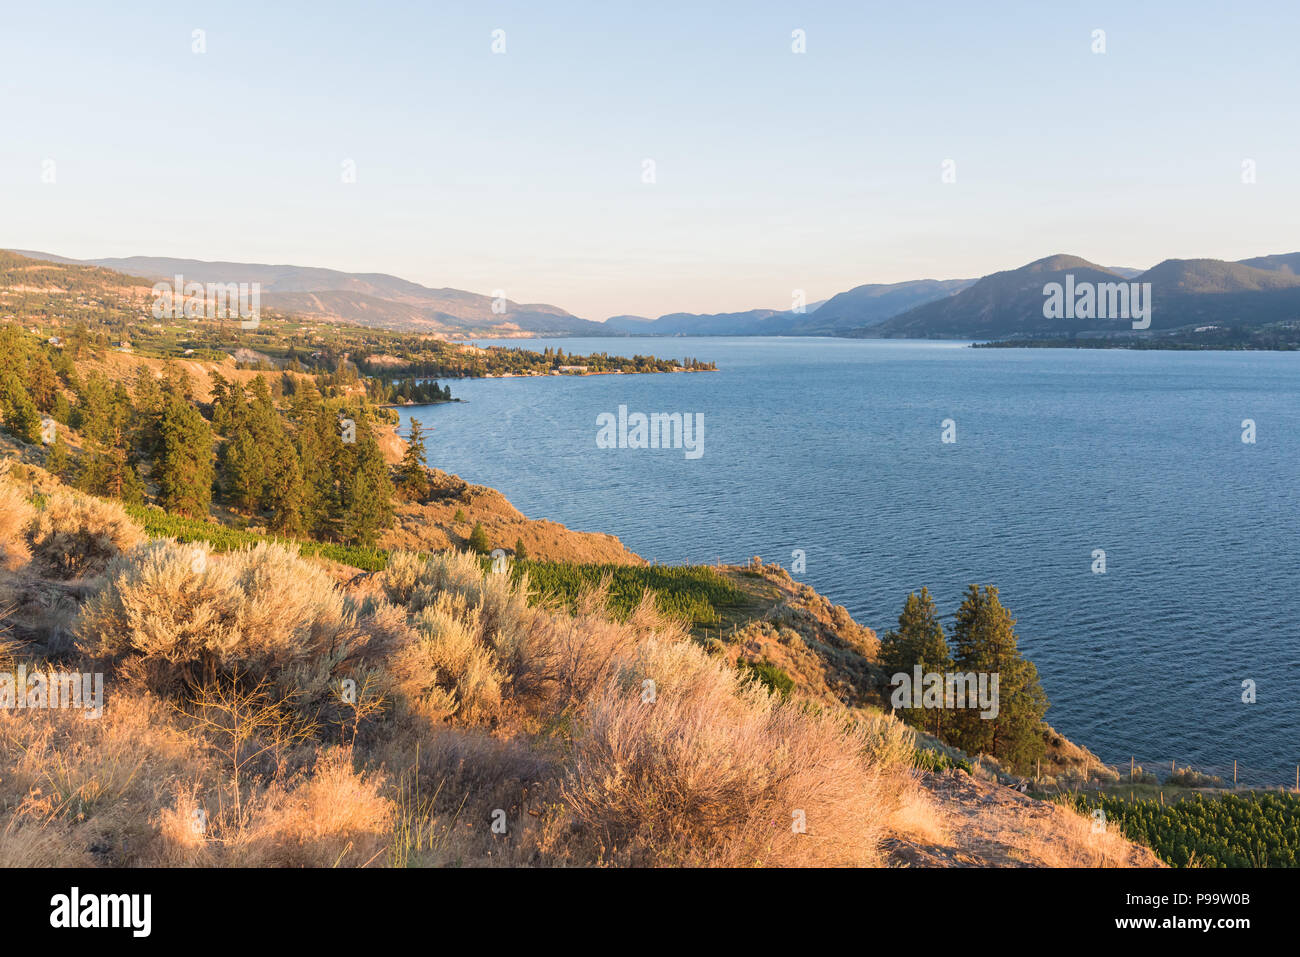 Vista de la banqueta Naramata, del lago Okanagan, y montañas, mirando al sur hacia Penticton al atardecer Foto de stock